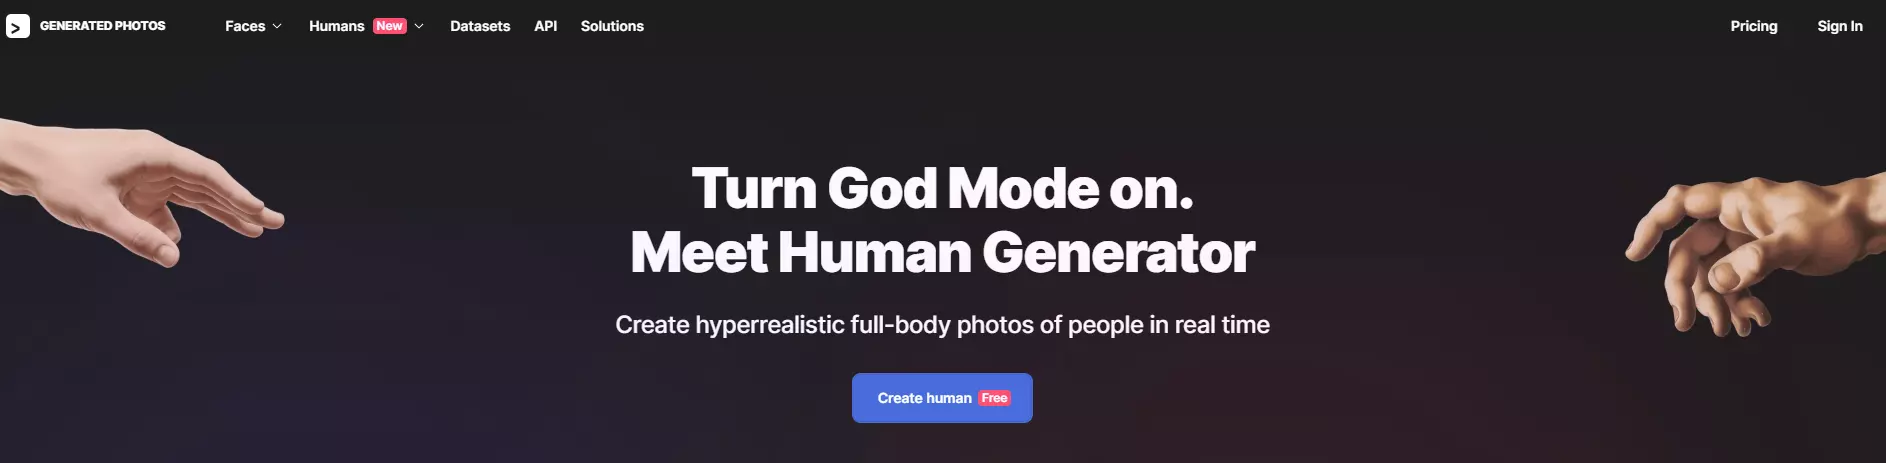 Human Generator AI